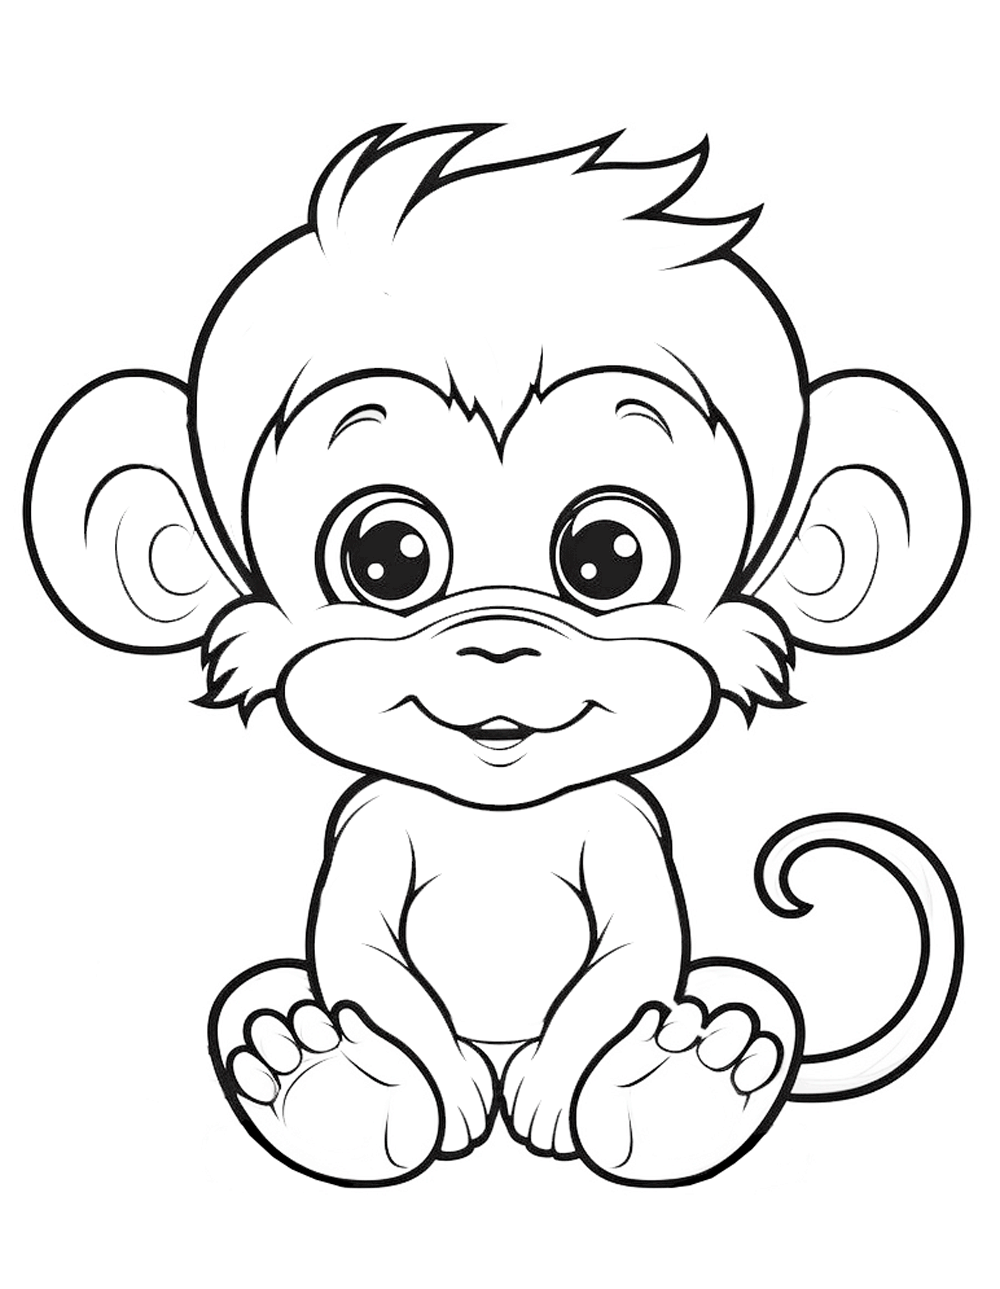 Colorear mono bebé, simio pequeño tipo chimpancé para colorear gratis